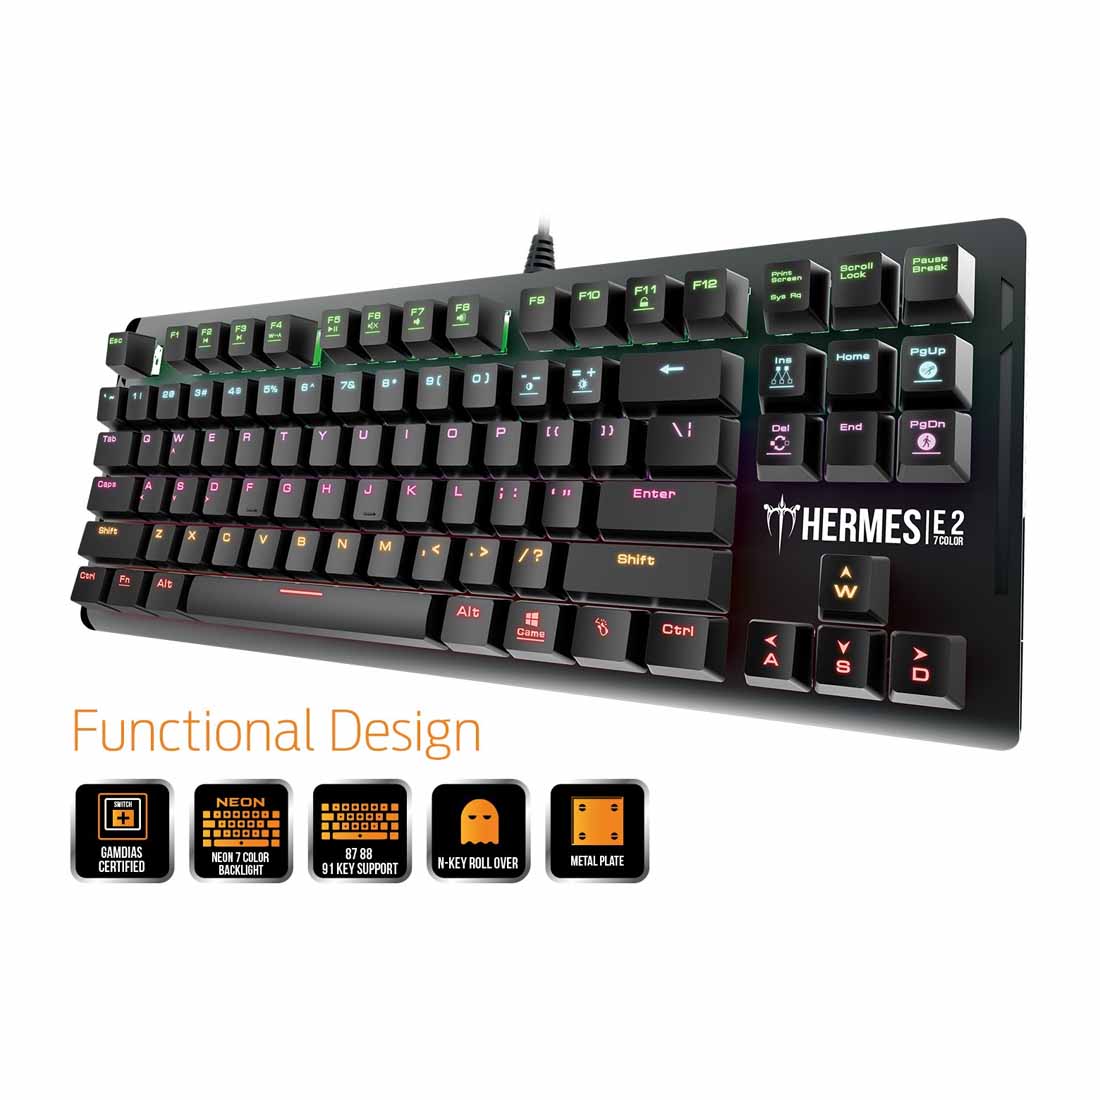 Gamdias HERMES E2 मैकेनिकल गेमिंग कीबोर्ड बिल्ट-इन मेमोरी और 7 कलर नियॉन रोशनी के साथ